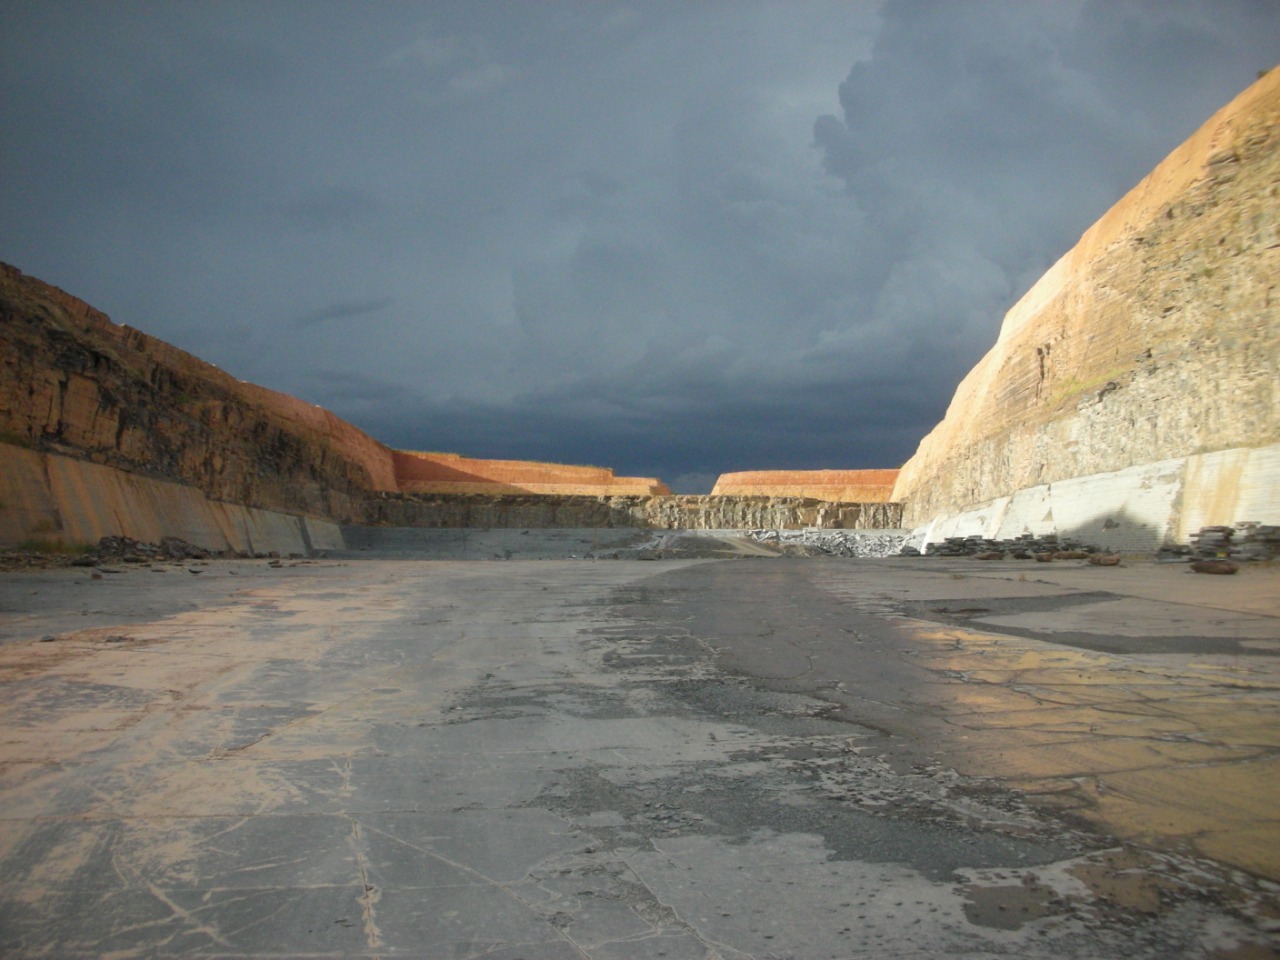 Slate quarry in Brazil